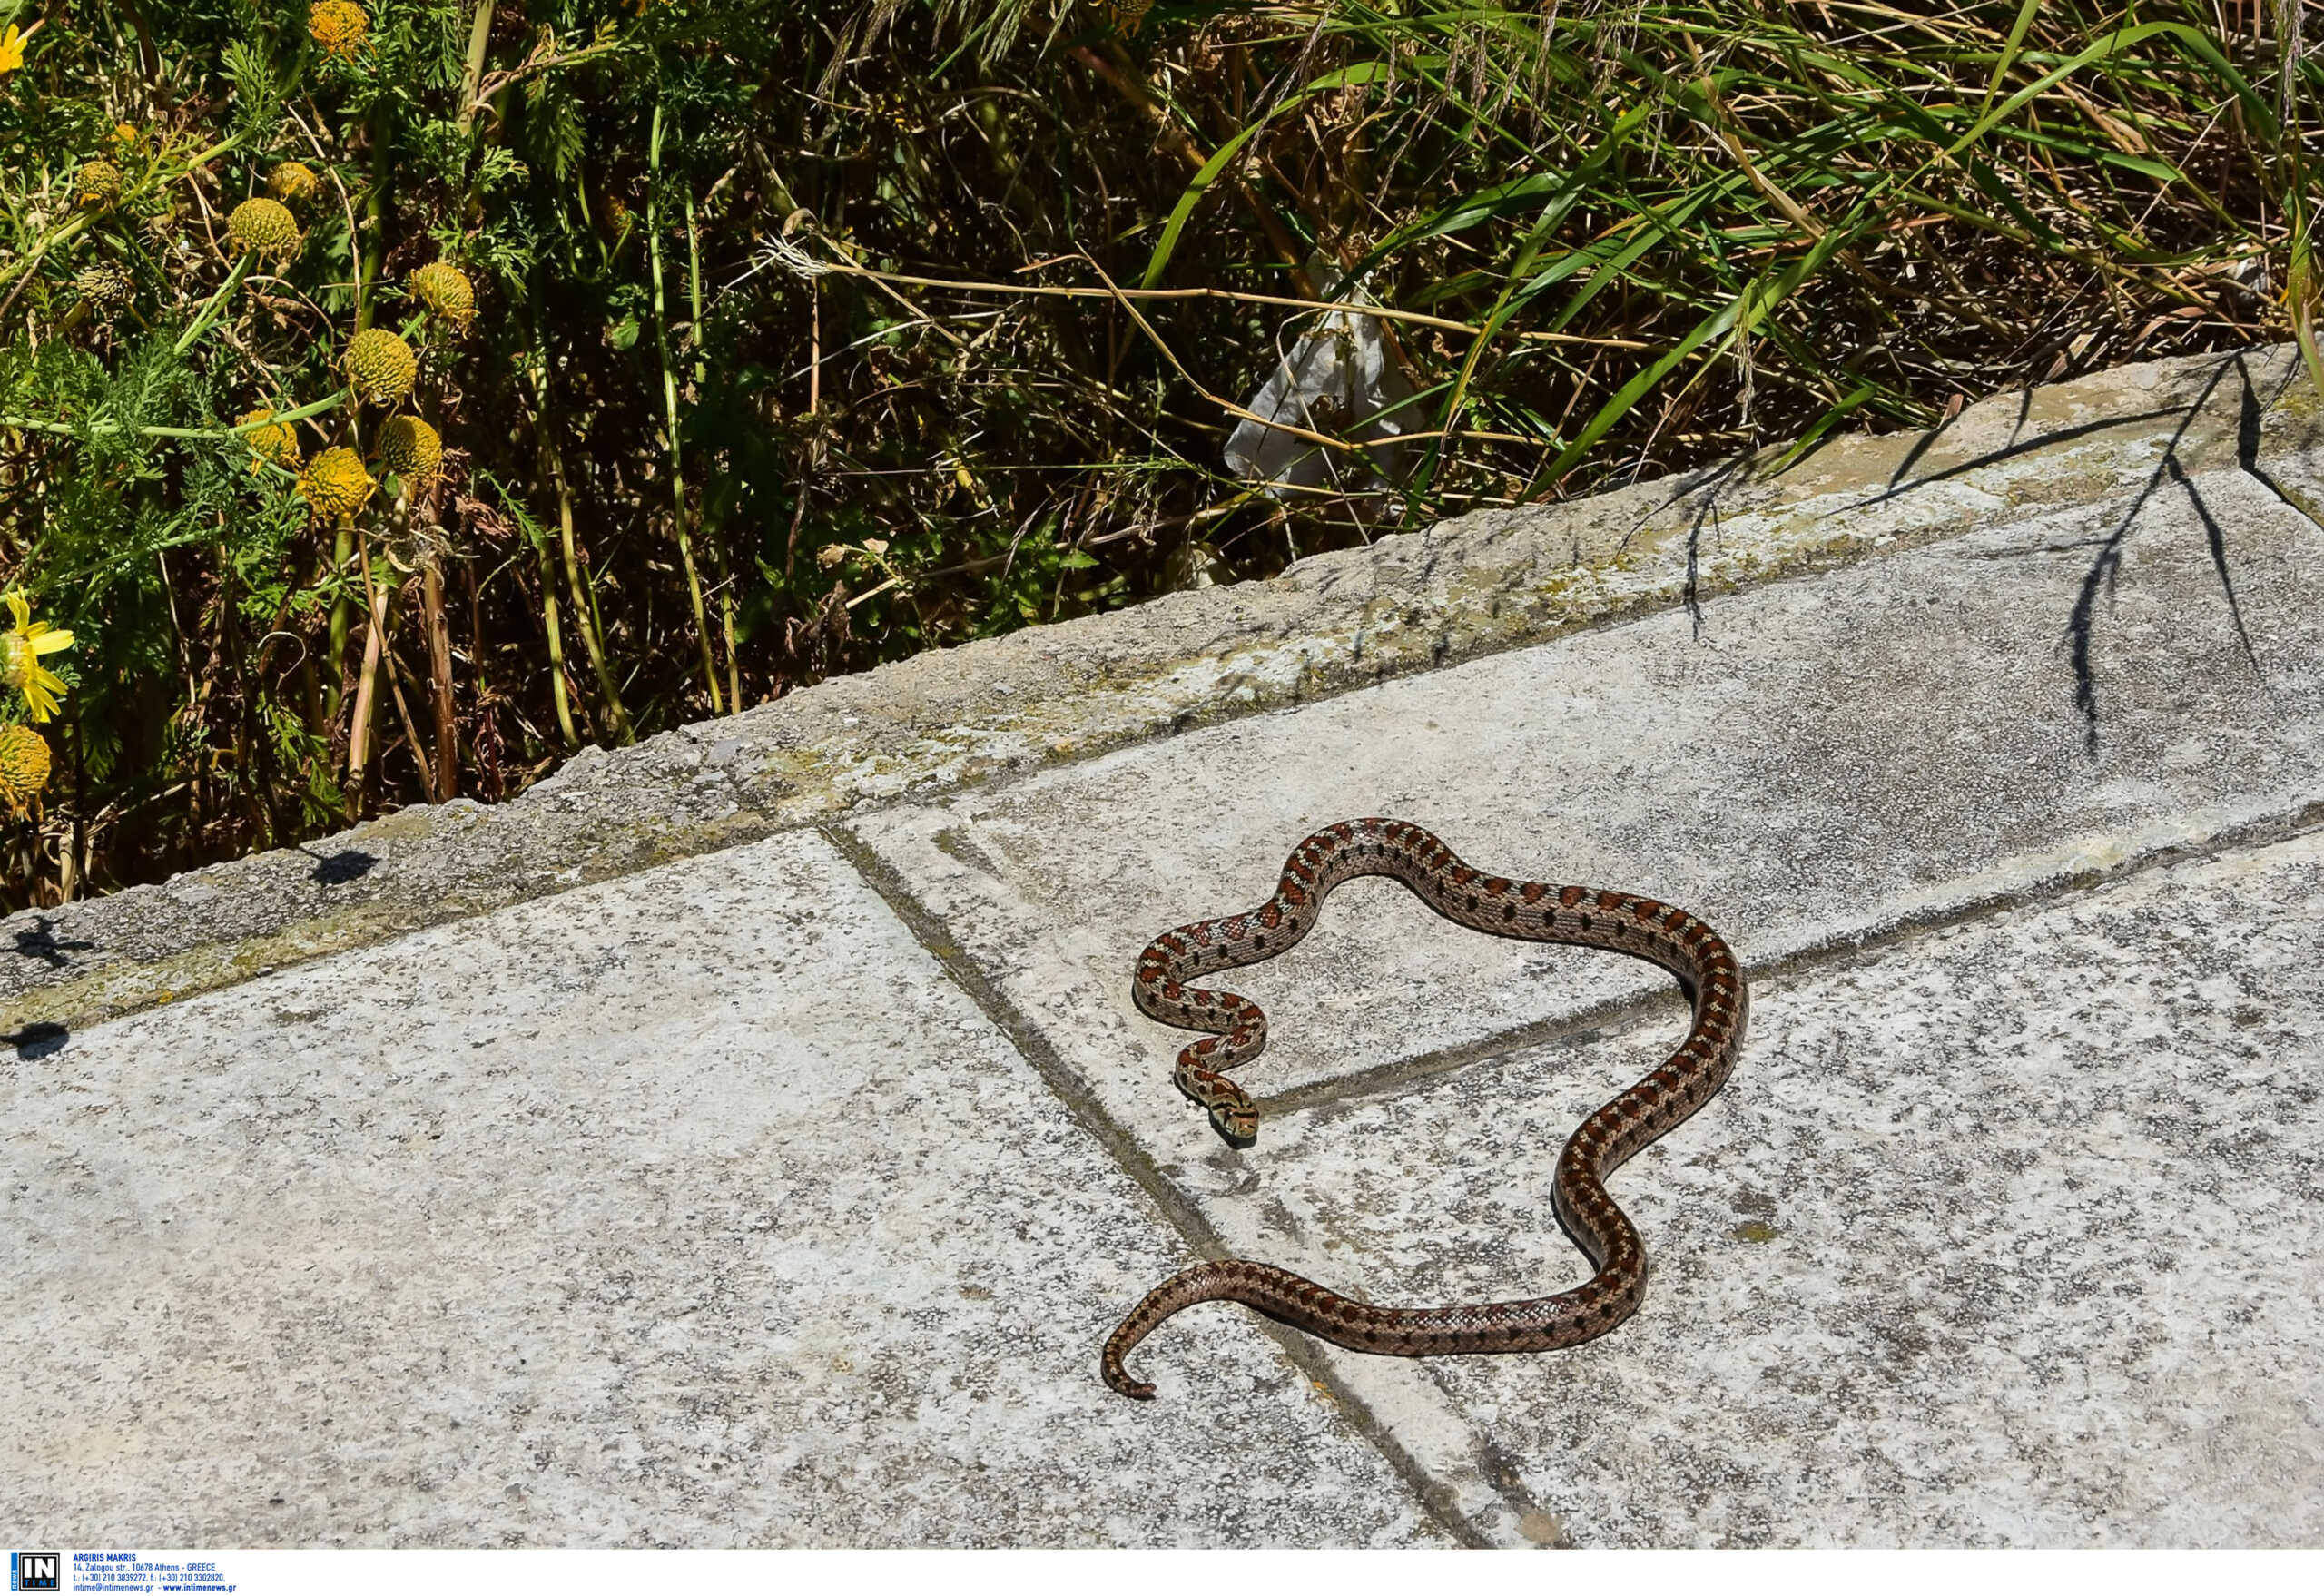 Θεσσαλονίκη: Φίδι προκάλεσε αναστάτωση – Αναζητείται ο ιδιοκτήτης του ερπετού